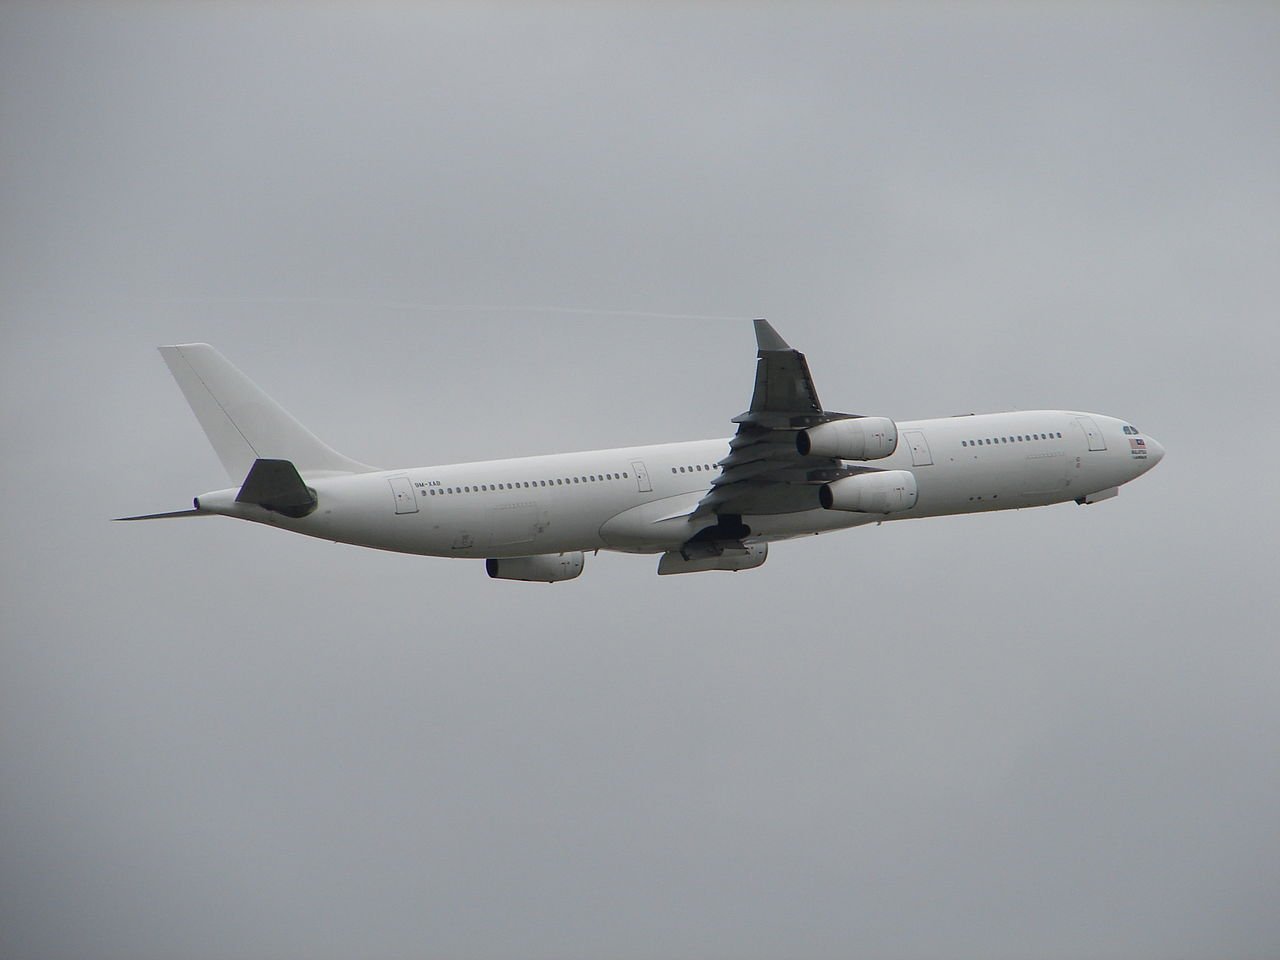 Airbus A340-300 despegando. Imagen para ilustración. Foto: U-95